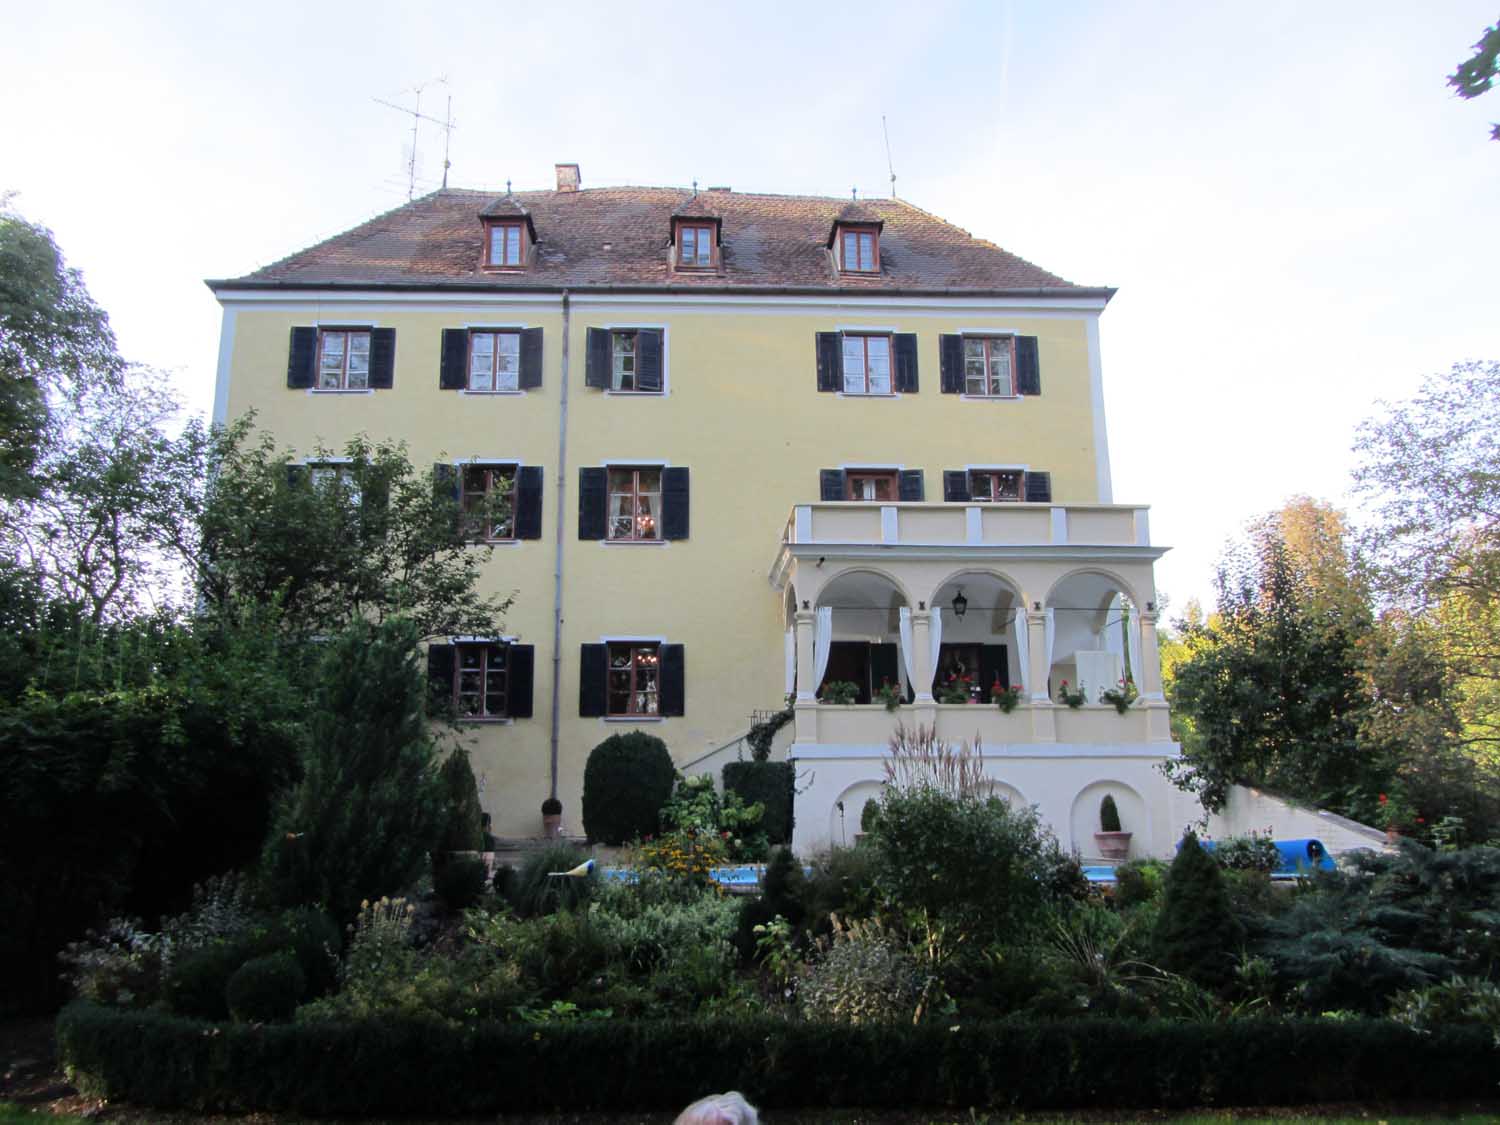 Schloss Peuerbach
Heute präsentiert sich der Palast insbesondere von der Gartenseite im italienischen Stil.